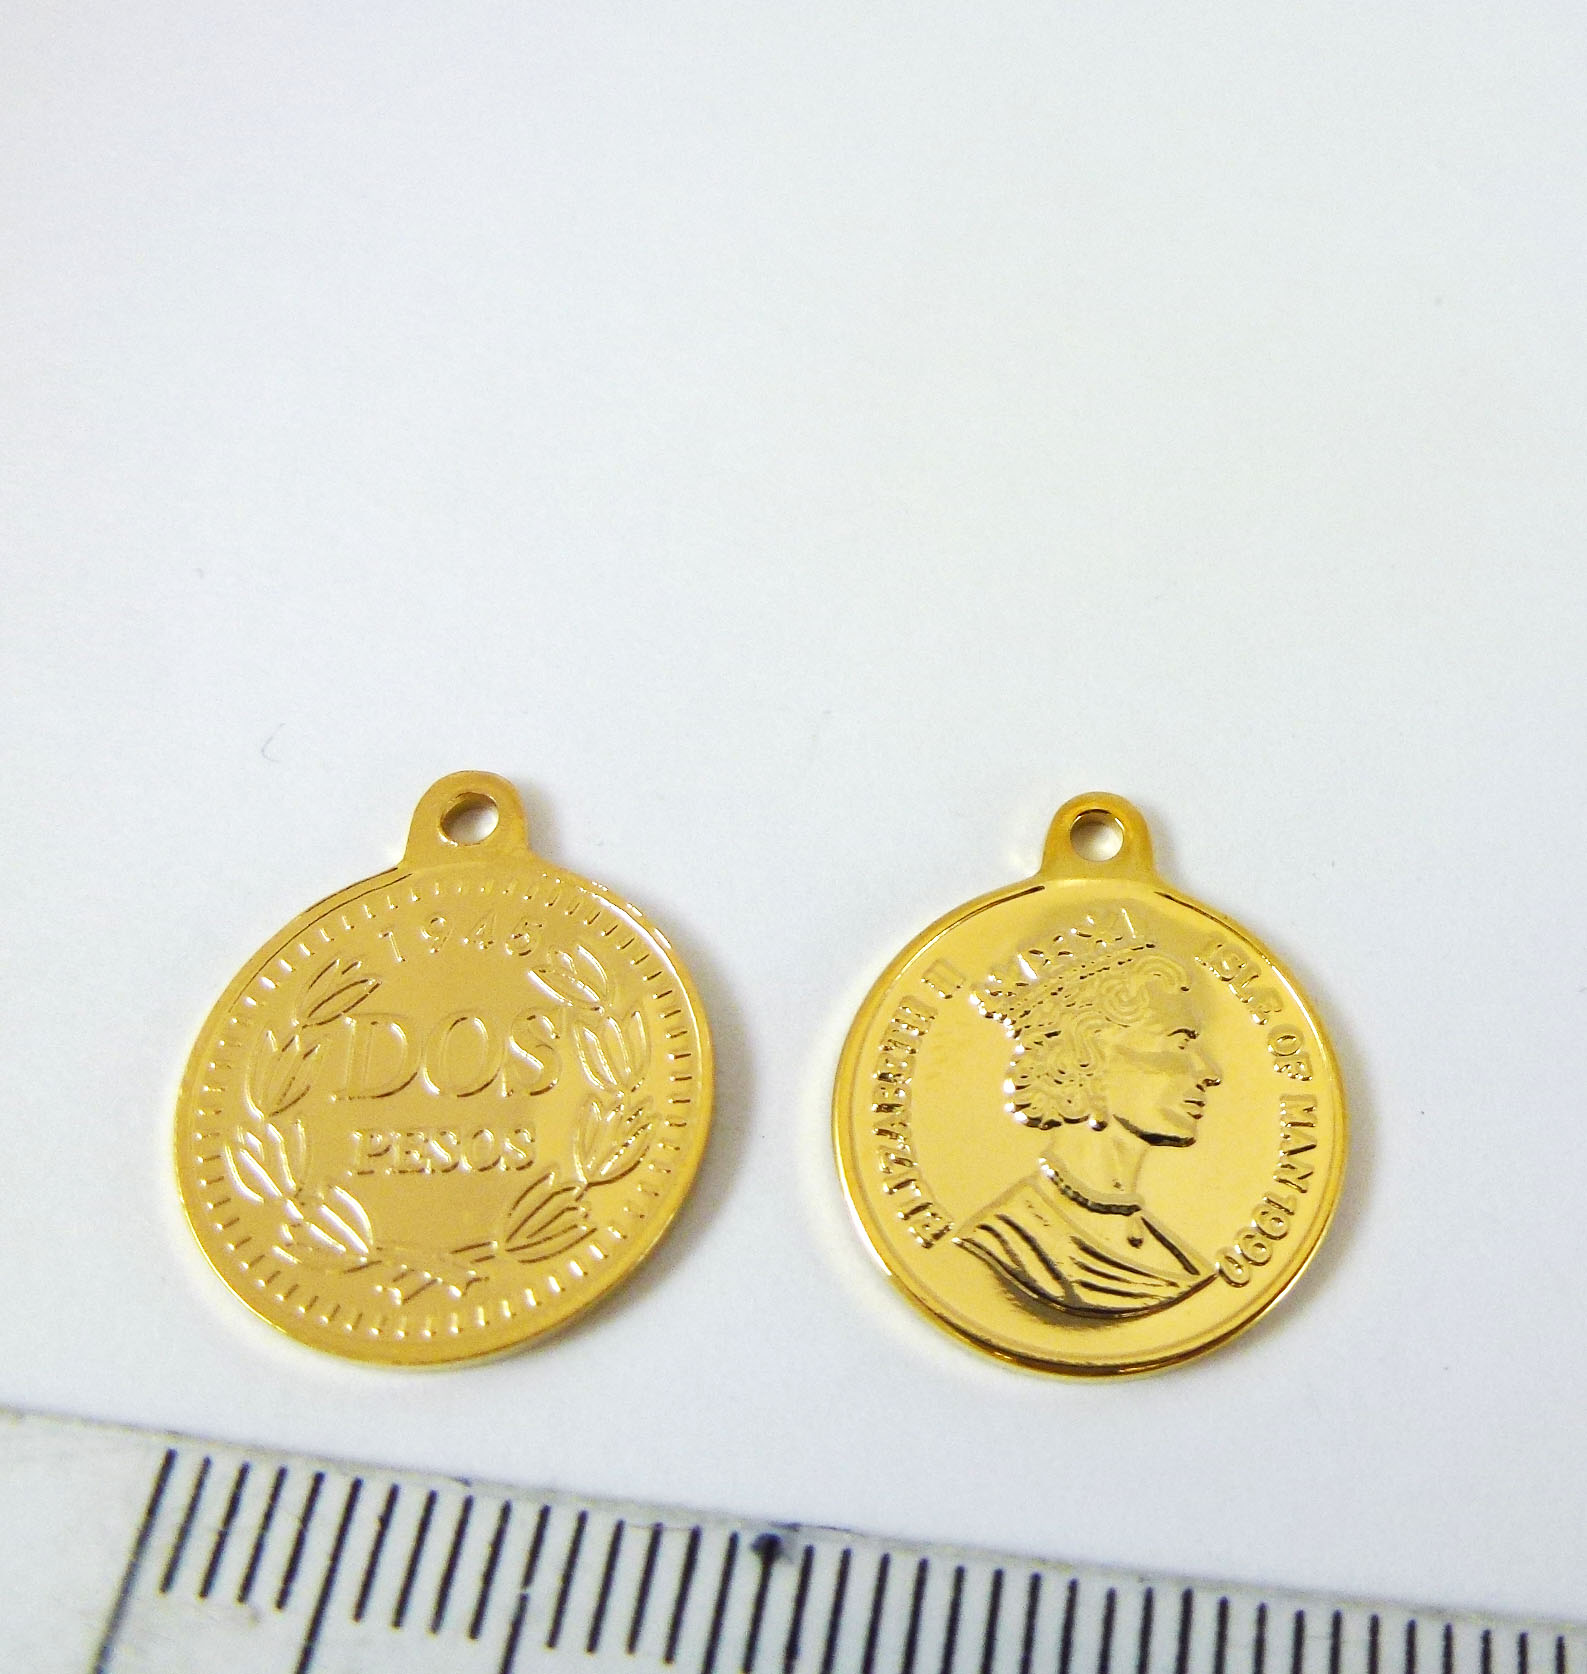 15mm銅鍍金色單孔美國錢幣